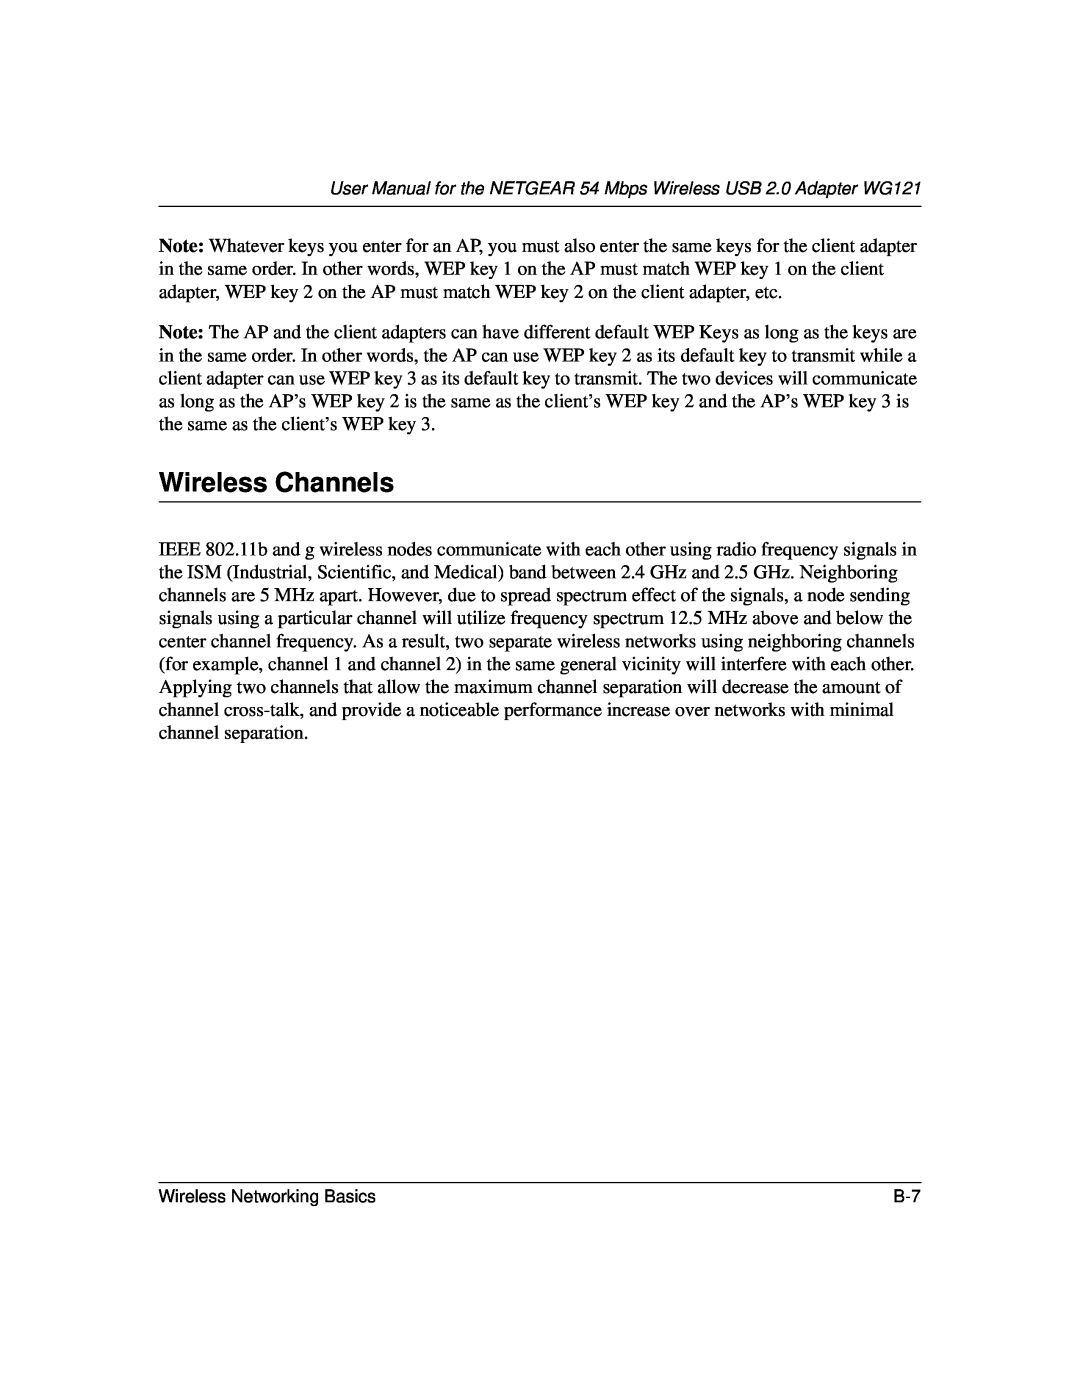 NETGEAR WG121 user manual Wireless Channels 